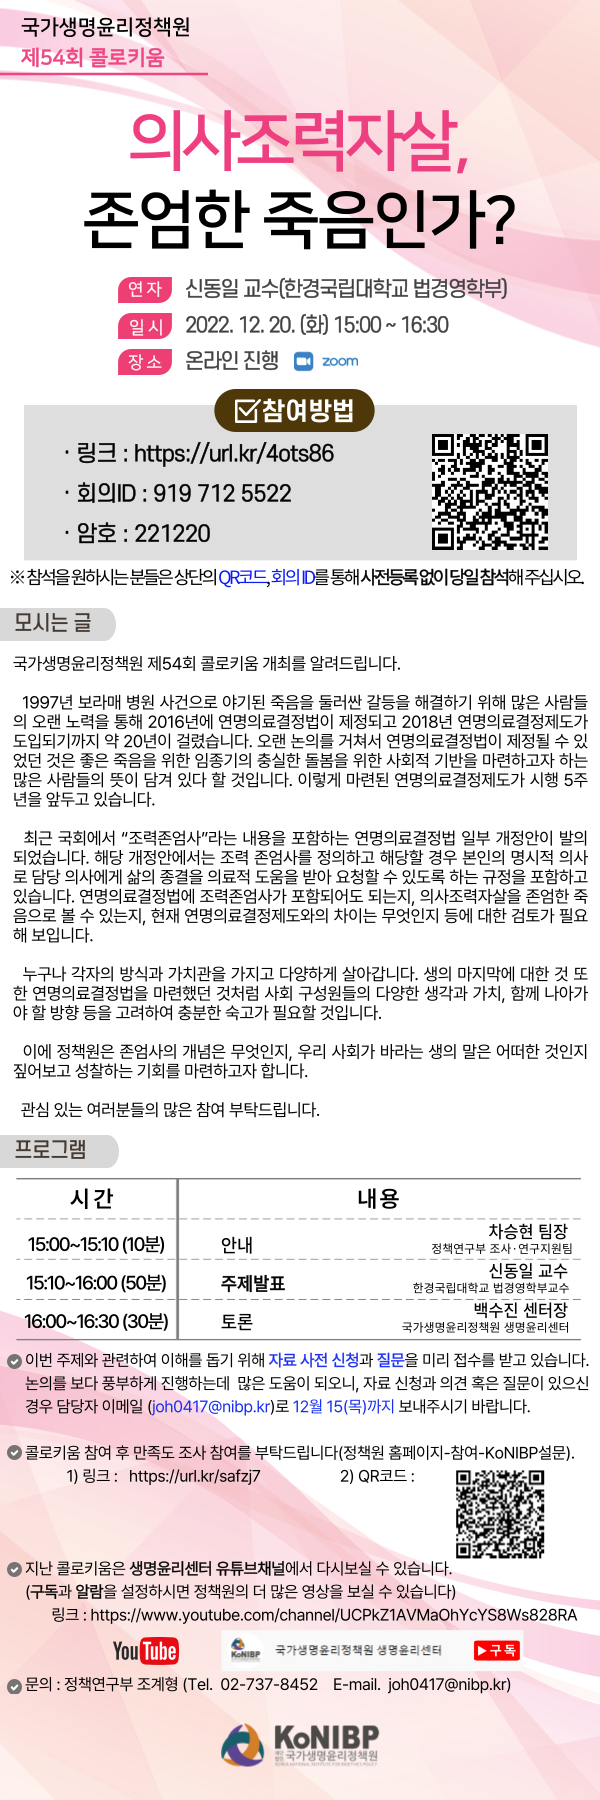 제54회 콜로키움 개최 초대장(안)_최종.png